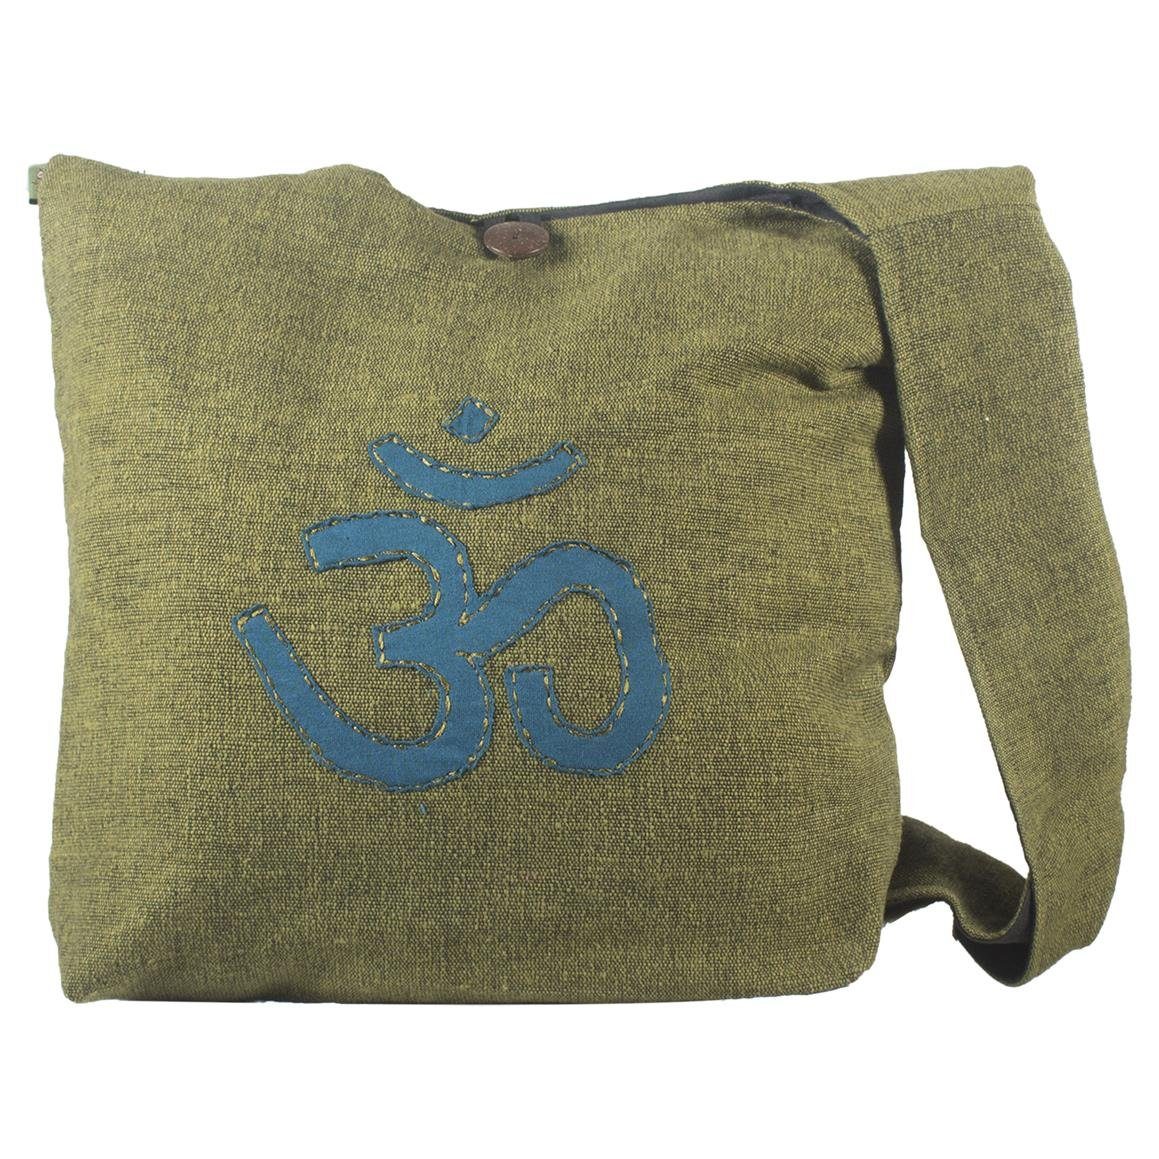 Damen Handtaschen Vishes Shopper Umhängetasche m. aufgenähtem umsticktem Om-Zeichen, Hippie, Goa, Yogi Style